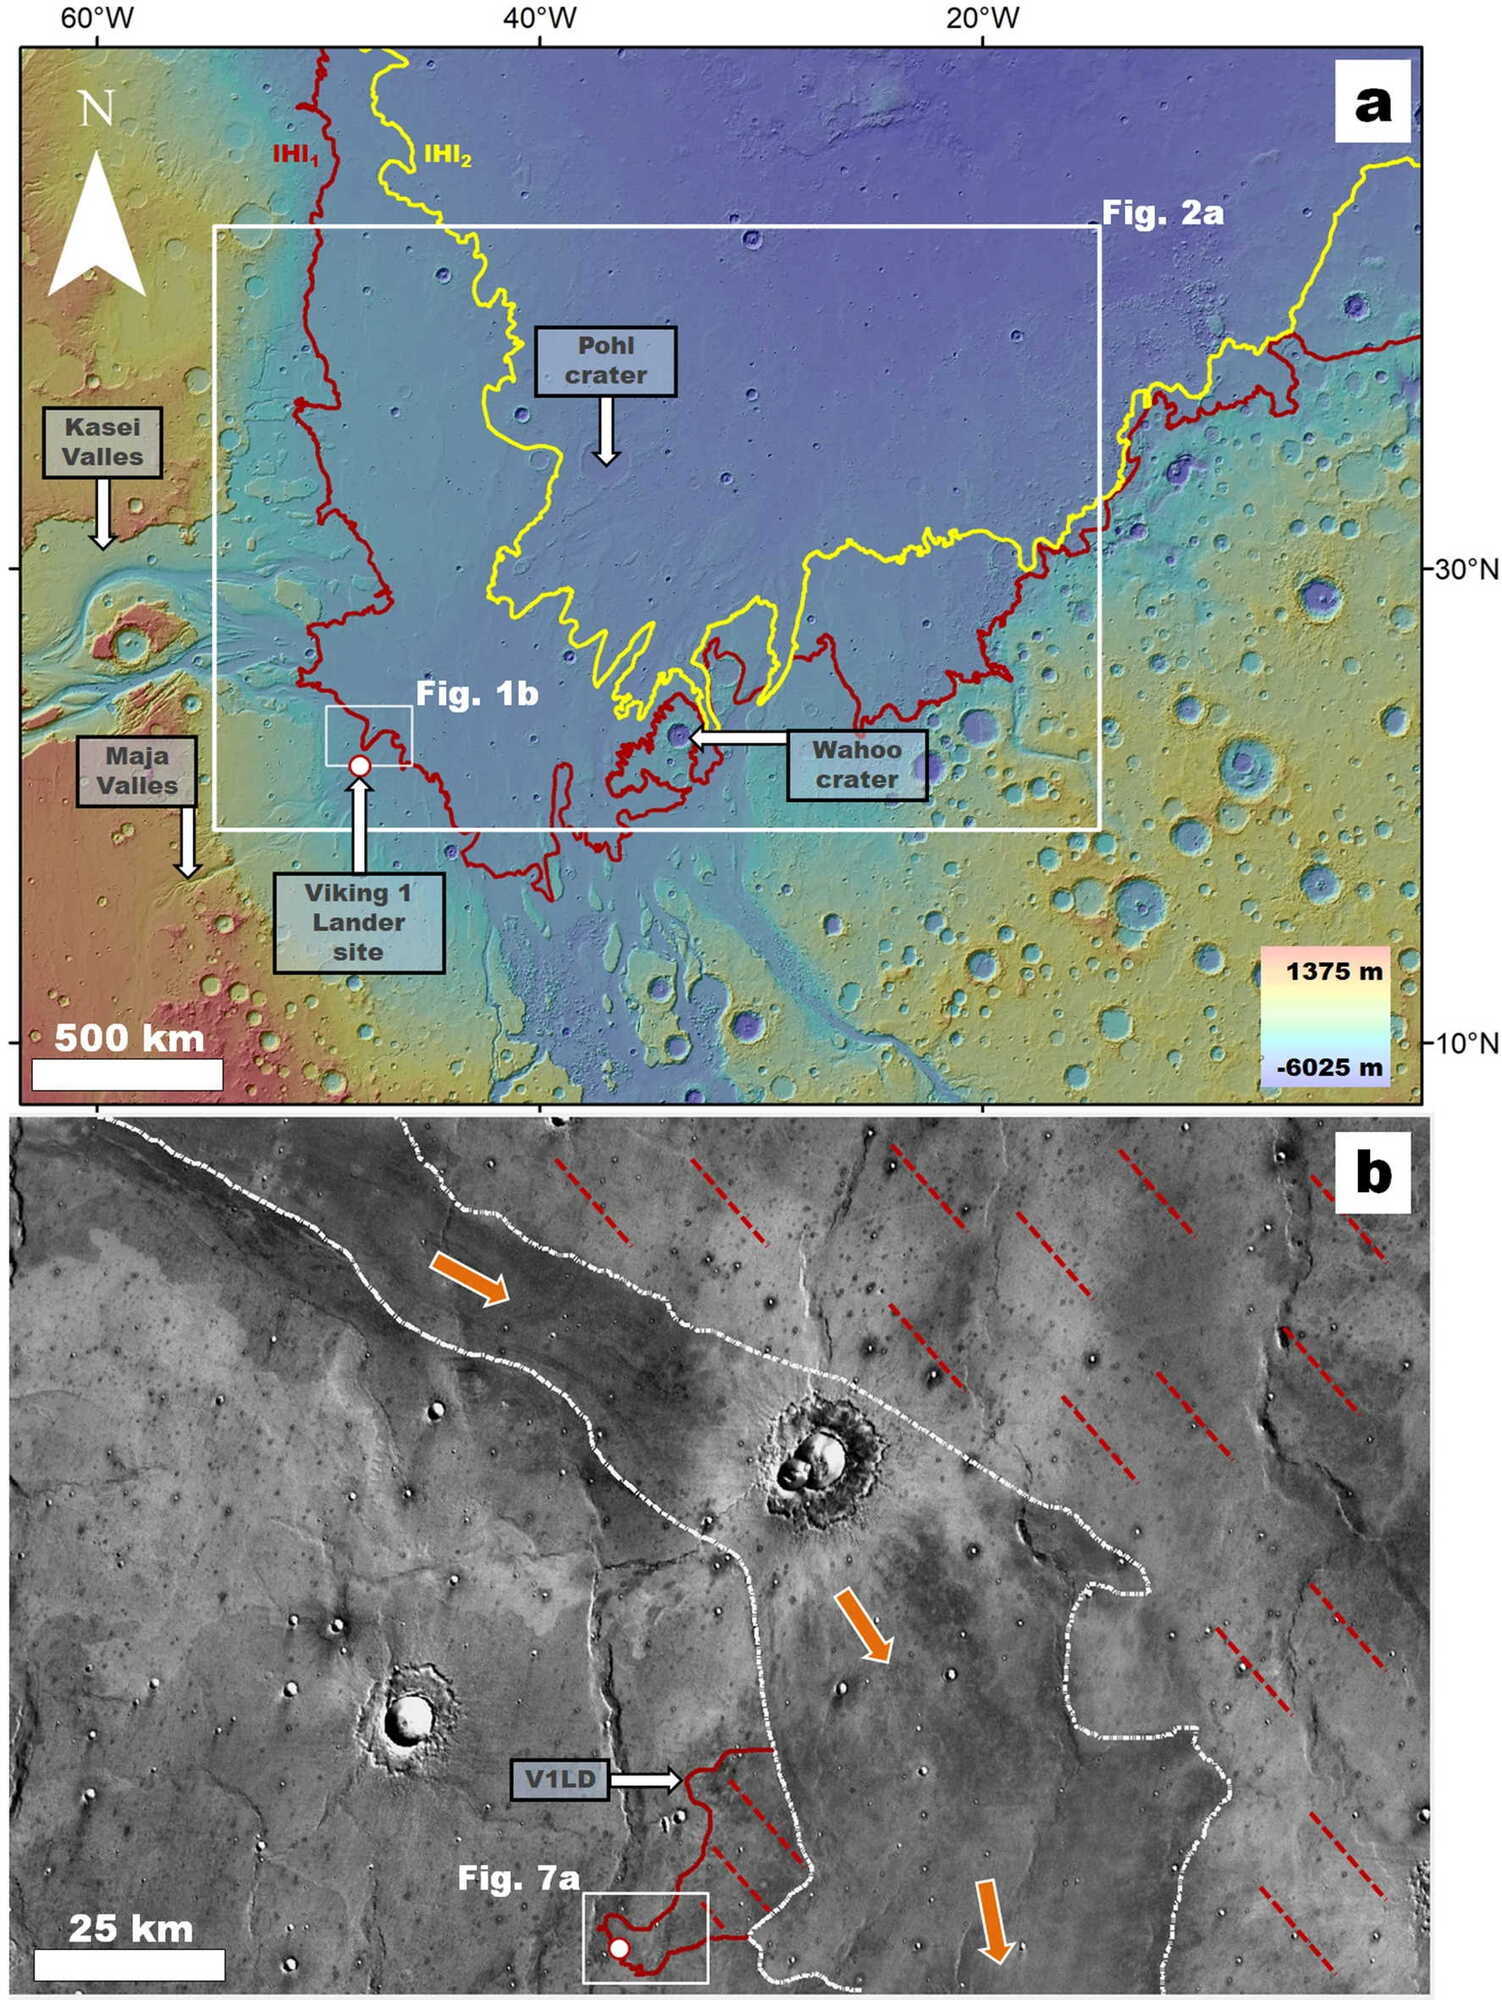 Регіон Chryse Planitia, де червоним позначено межі давнього цунамі, а також місце посадки ''Вікінг-1''